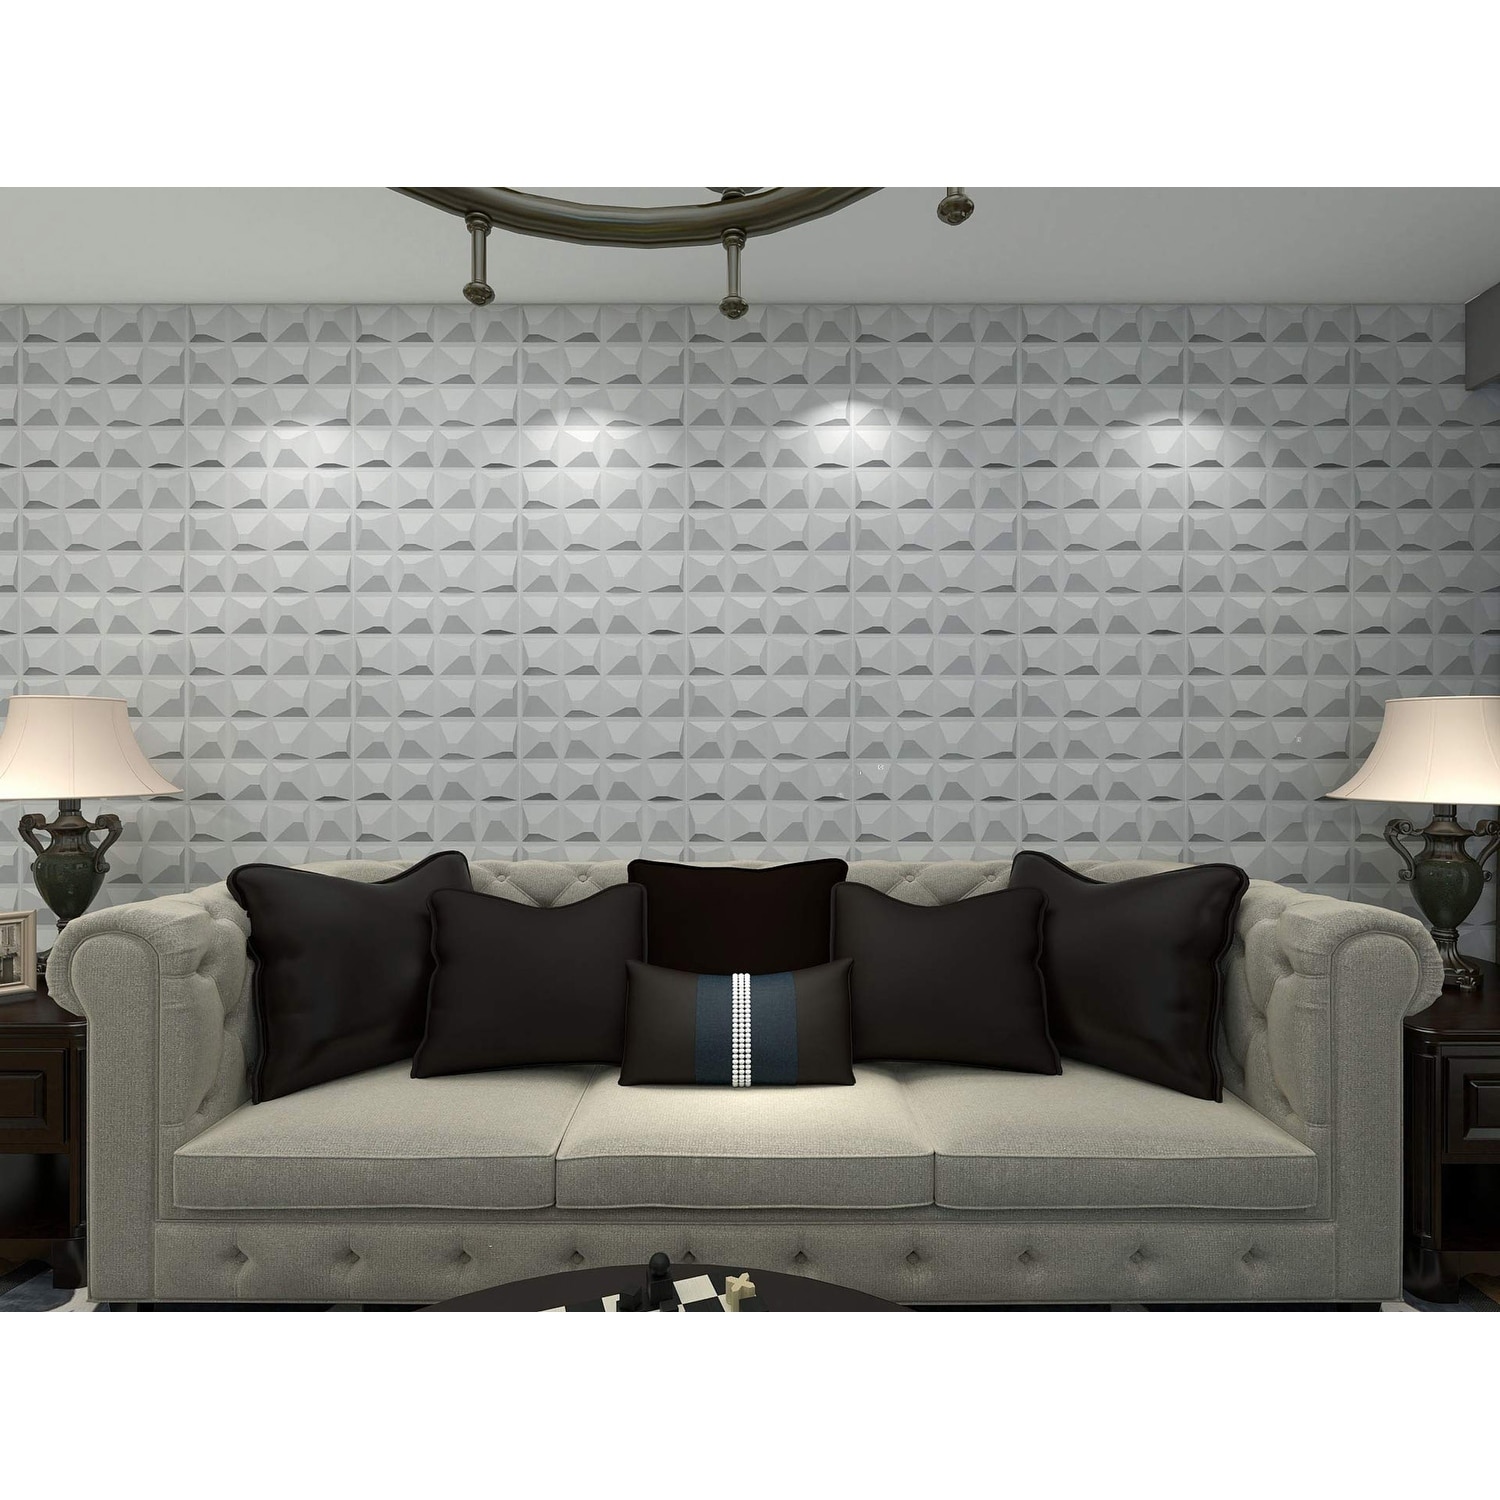 Shop Art3d 3d Wall Panels Pvc Mountain Design 32 Sq Ft Overstock 31681530